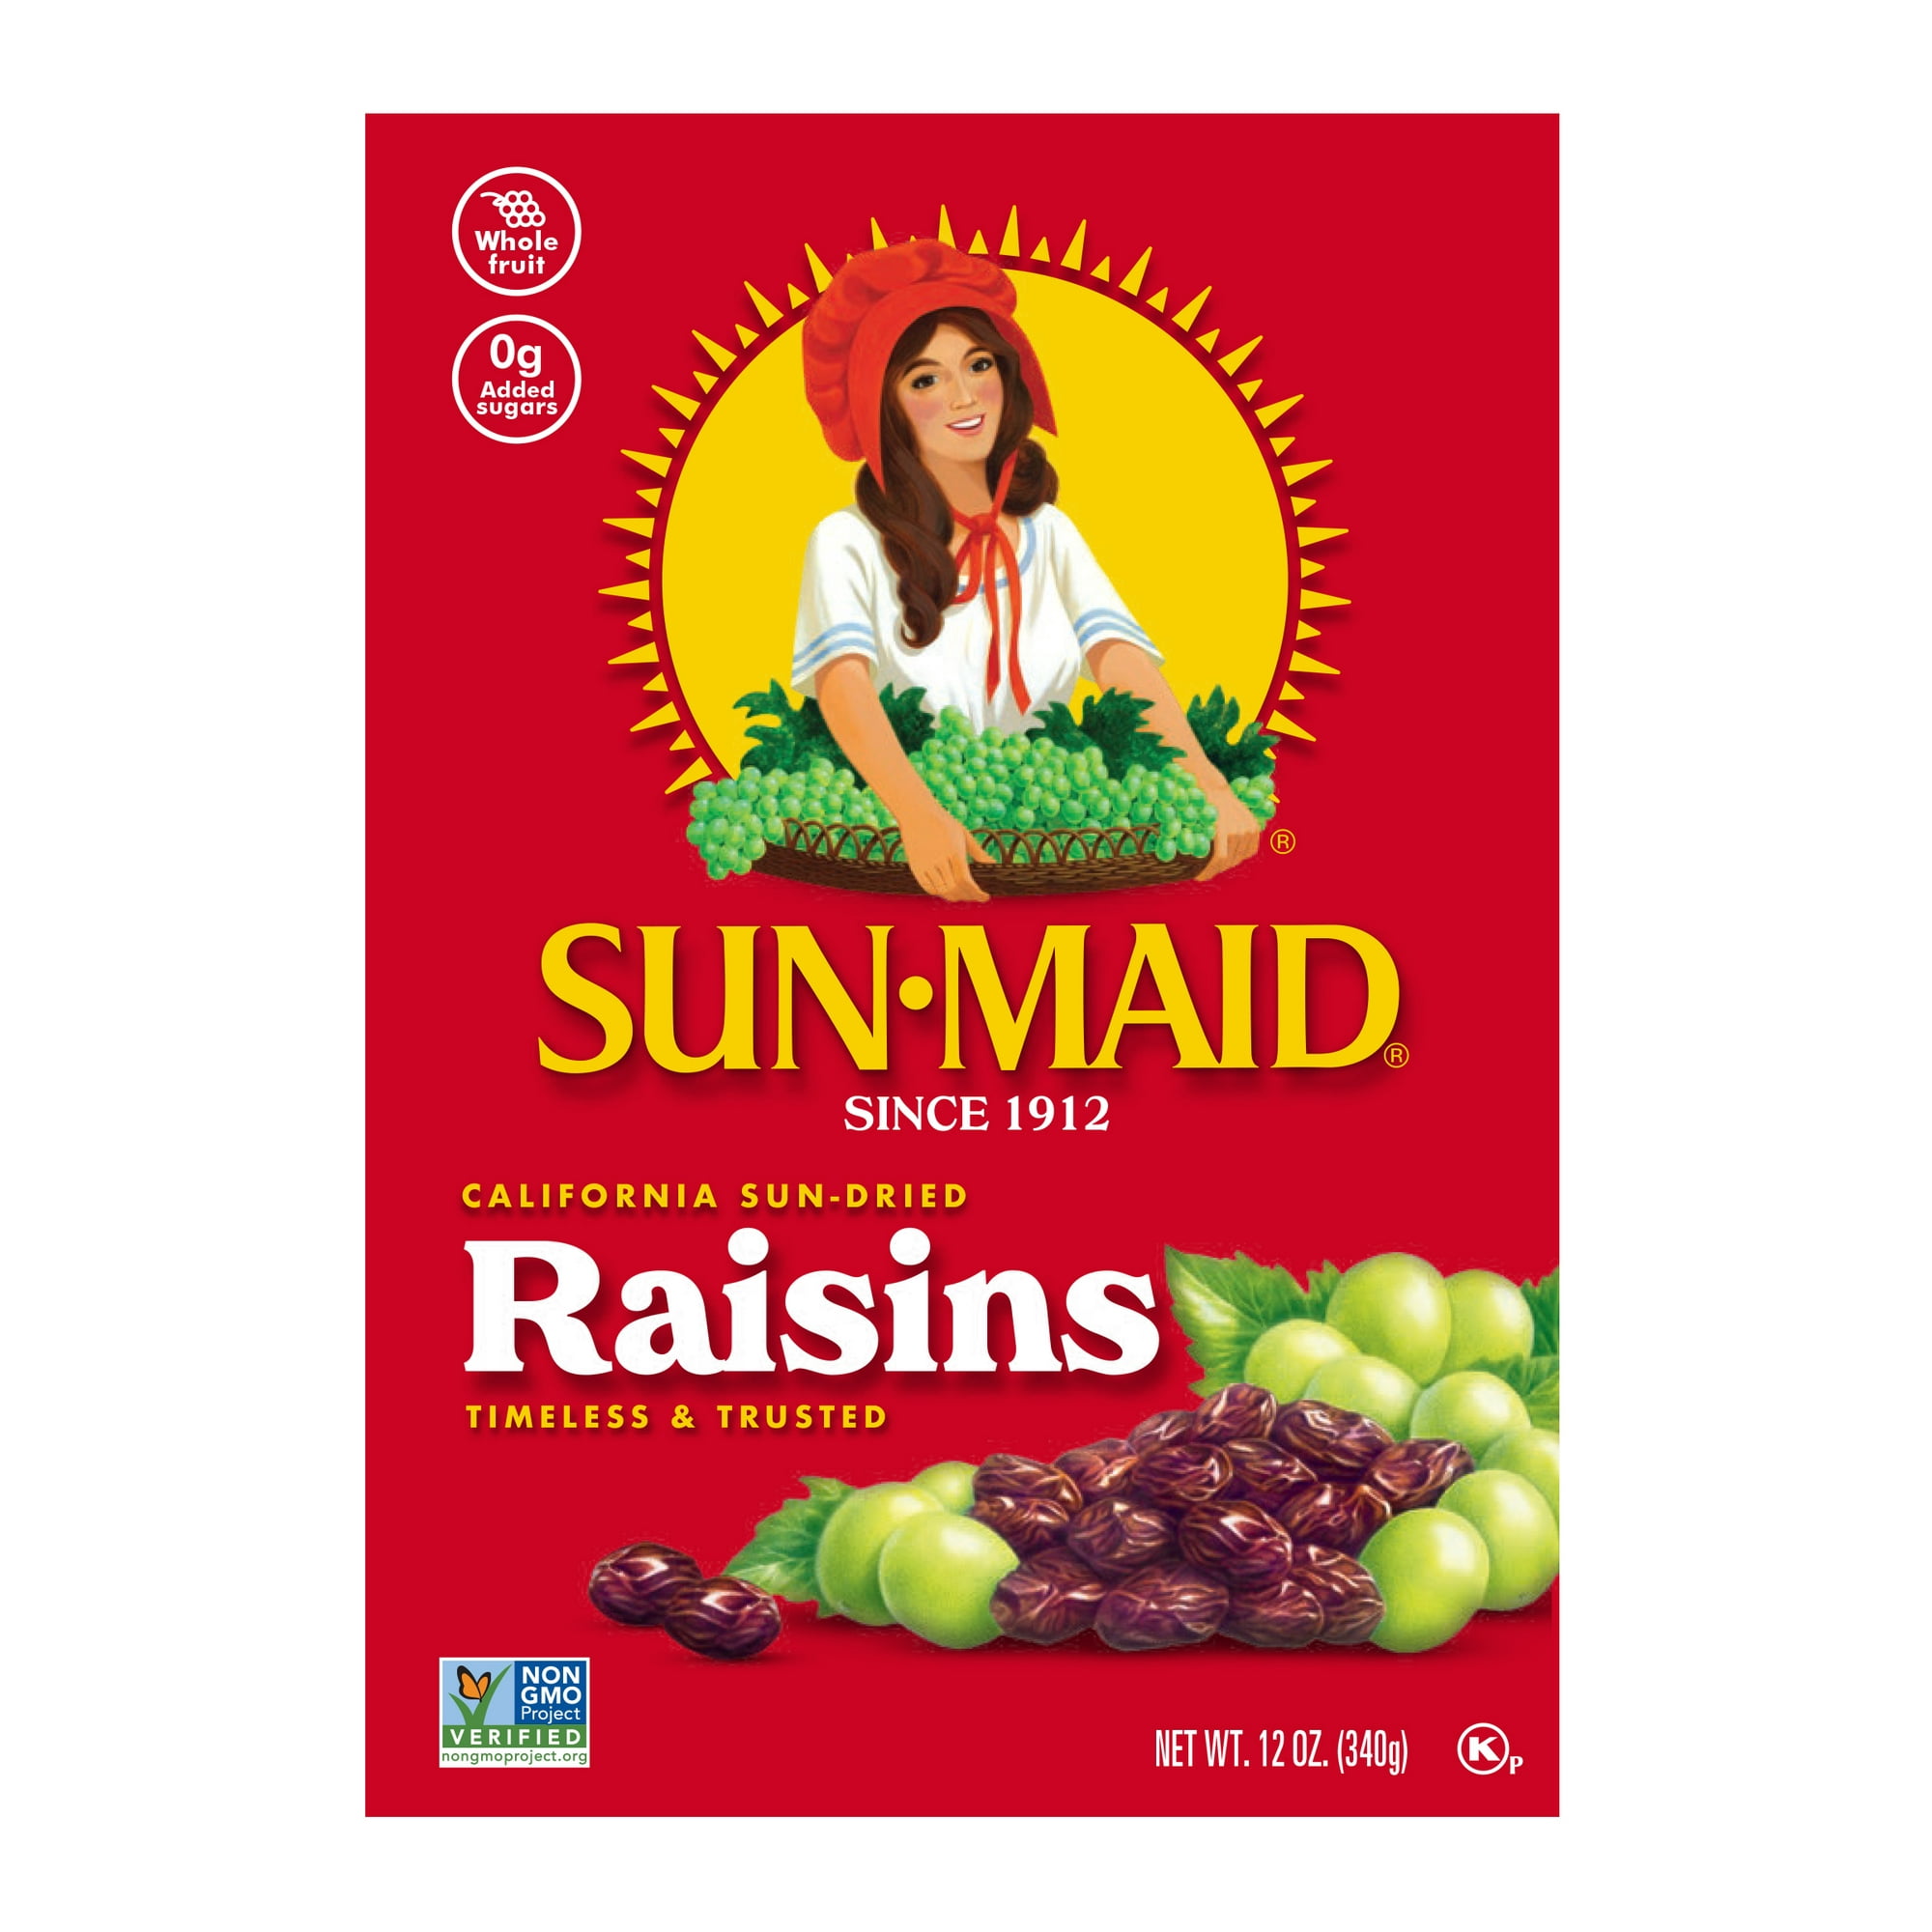 Sun-Maid-California-Sun-Dried-Raisins-Dried-Fruit-Snack-12-oz-Box_7edc52ee-51c1-480c-9dbb-34396ef407f9.b507c4809cbc818470432ee2c61bdd72.jpeg